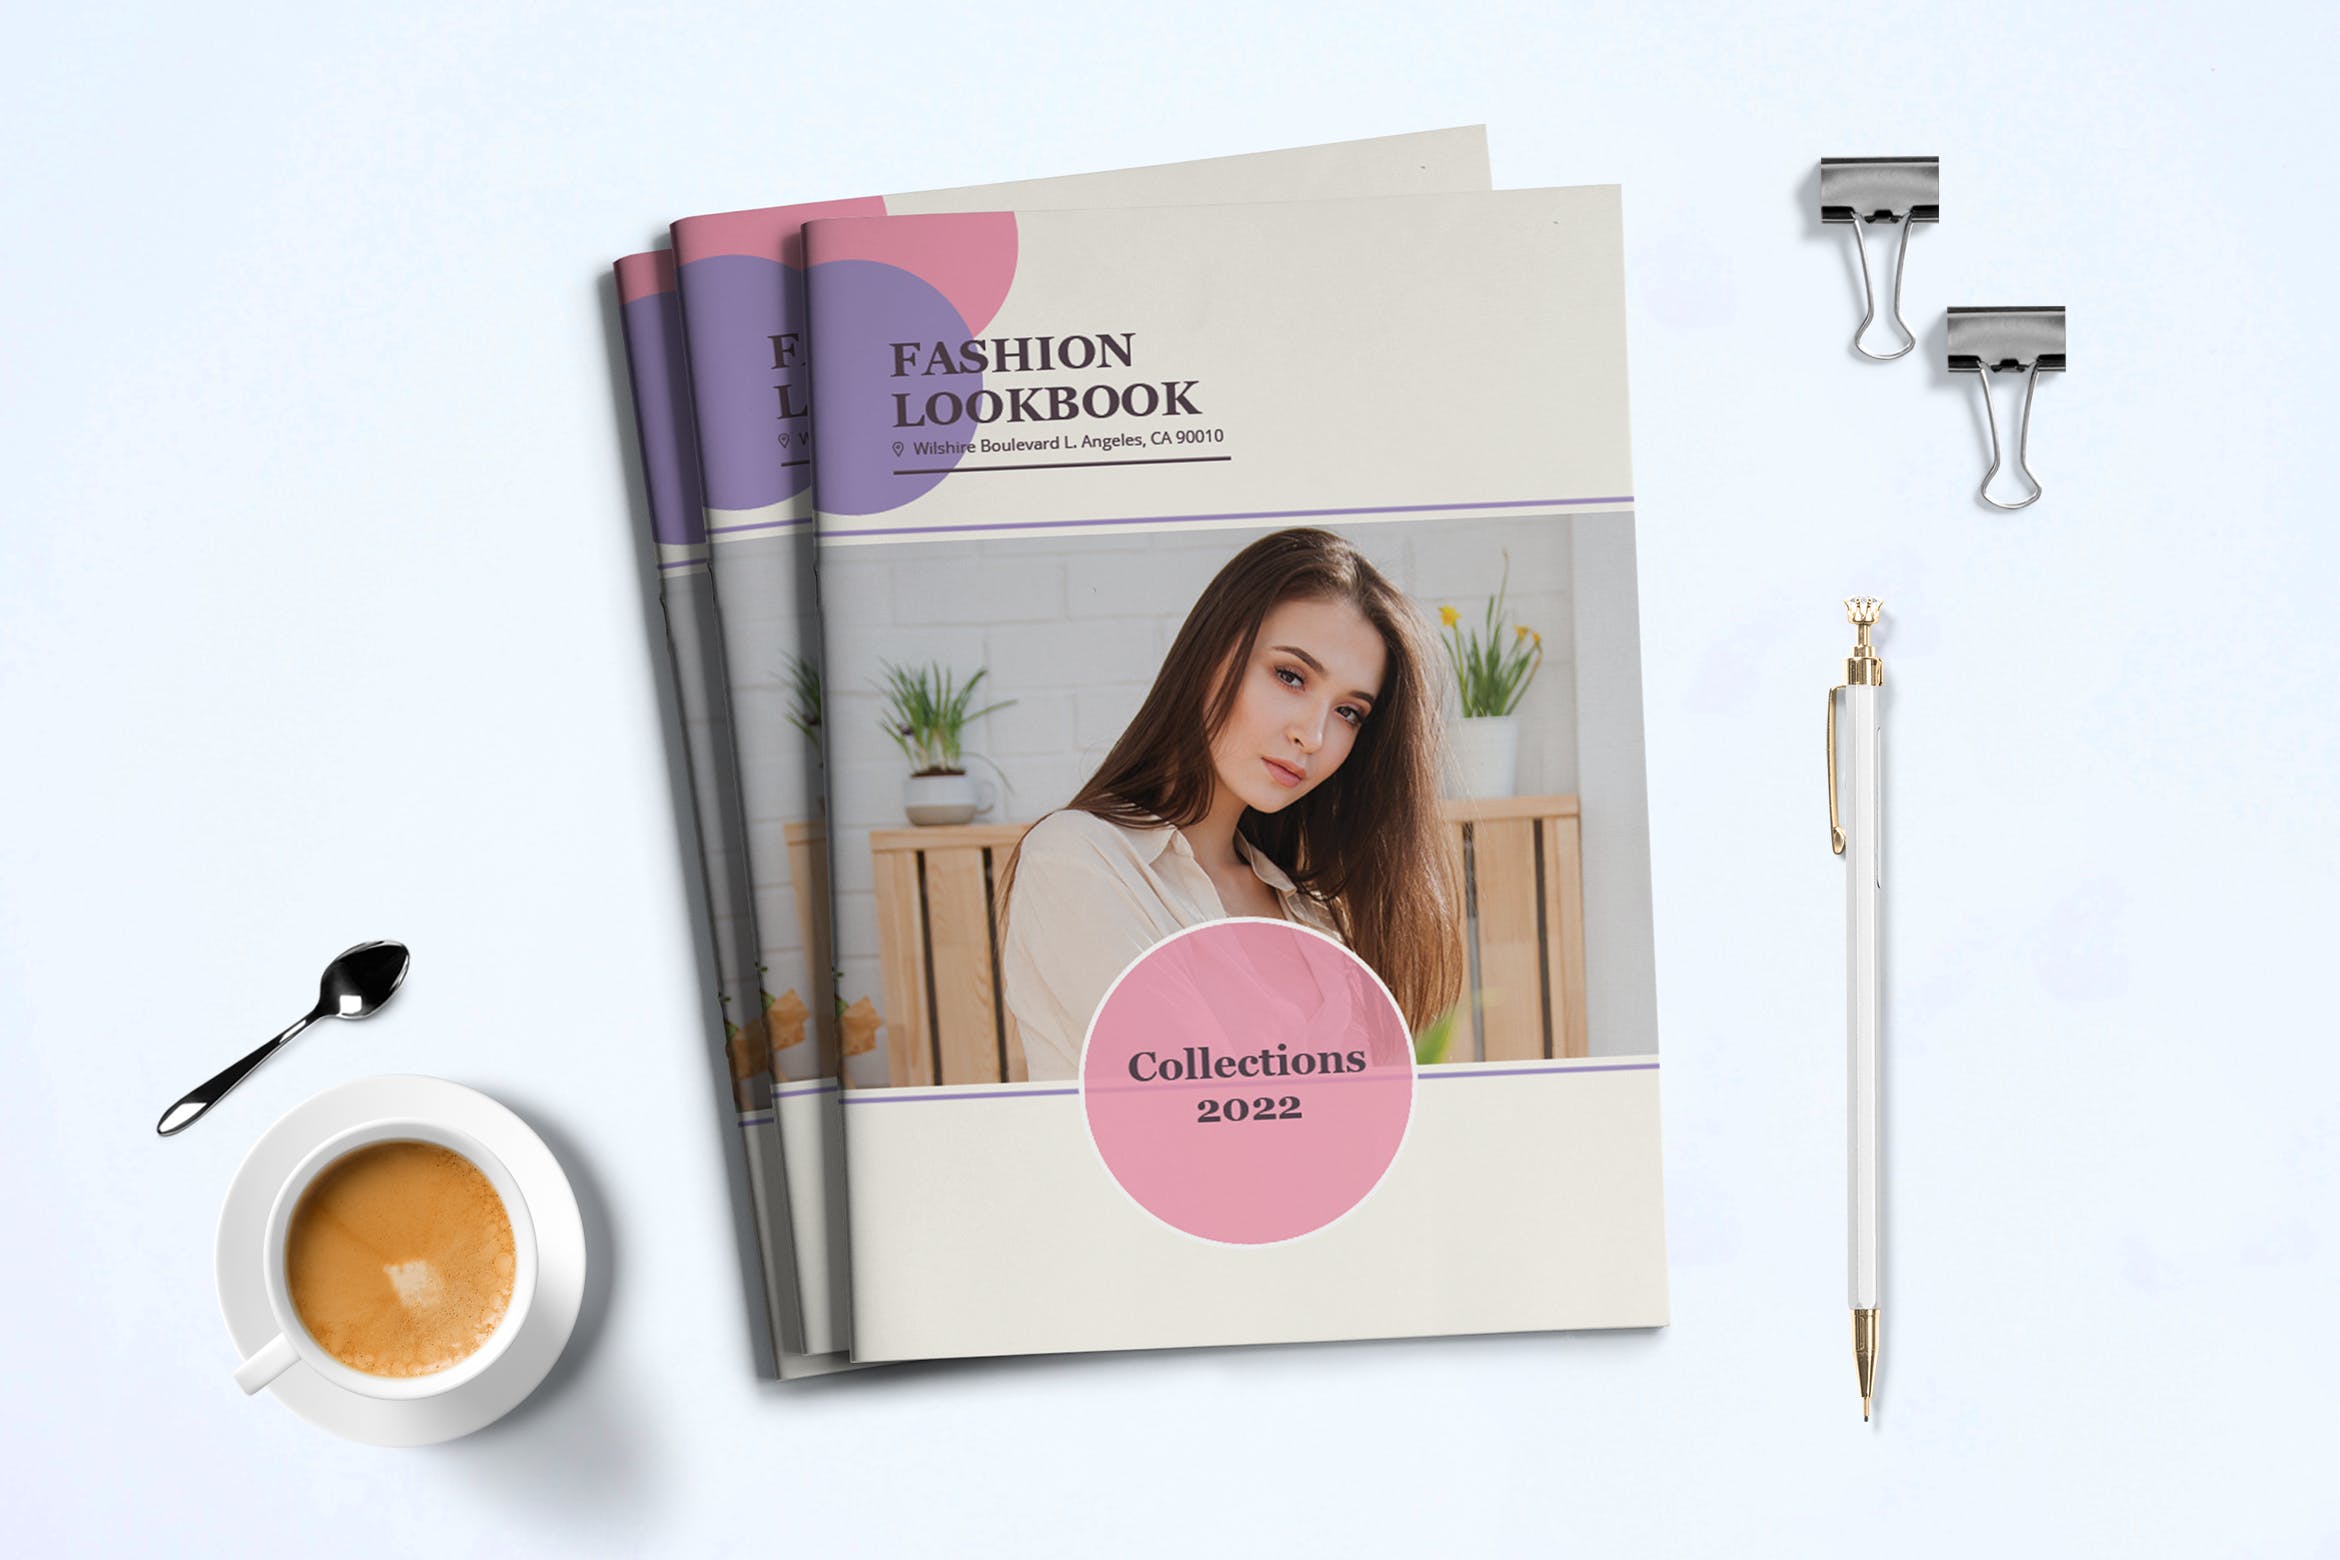 时装订货画册/新品上市产品16图库精选目录设计模板v3 Fashion Lookbook Template插图